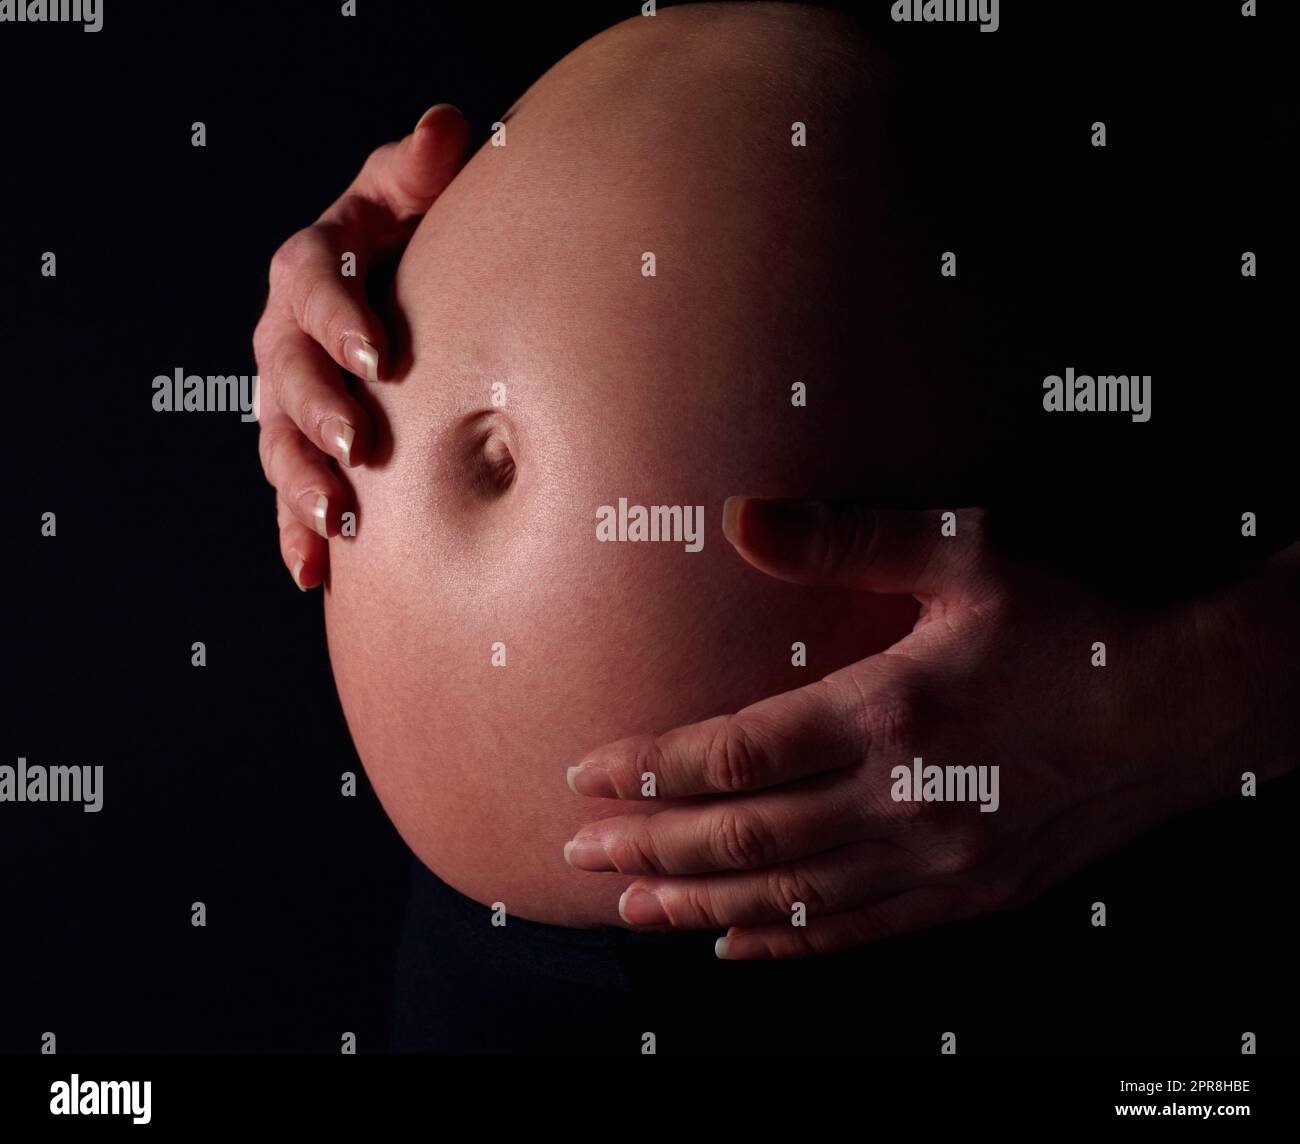 Schwanger Frau hält freiliegenden Bauch vor schwarzem Hintergrund. Detailaufnahme einer Schwangeren, die einen freiliegenden Bauch vor schwarzem Hintergrund hält. Stockfoto